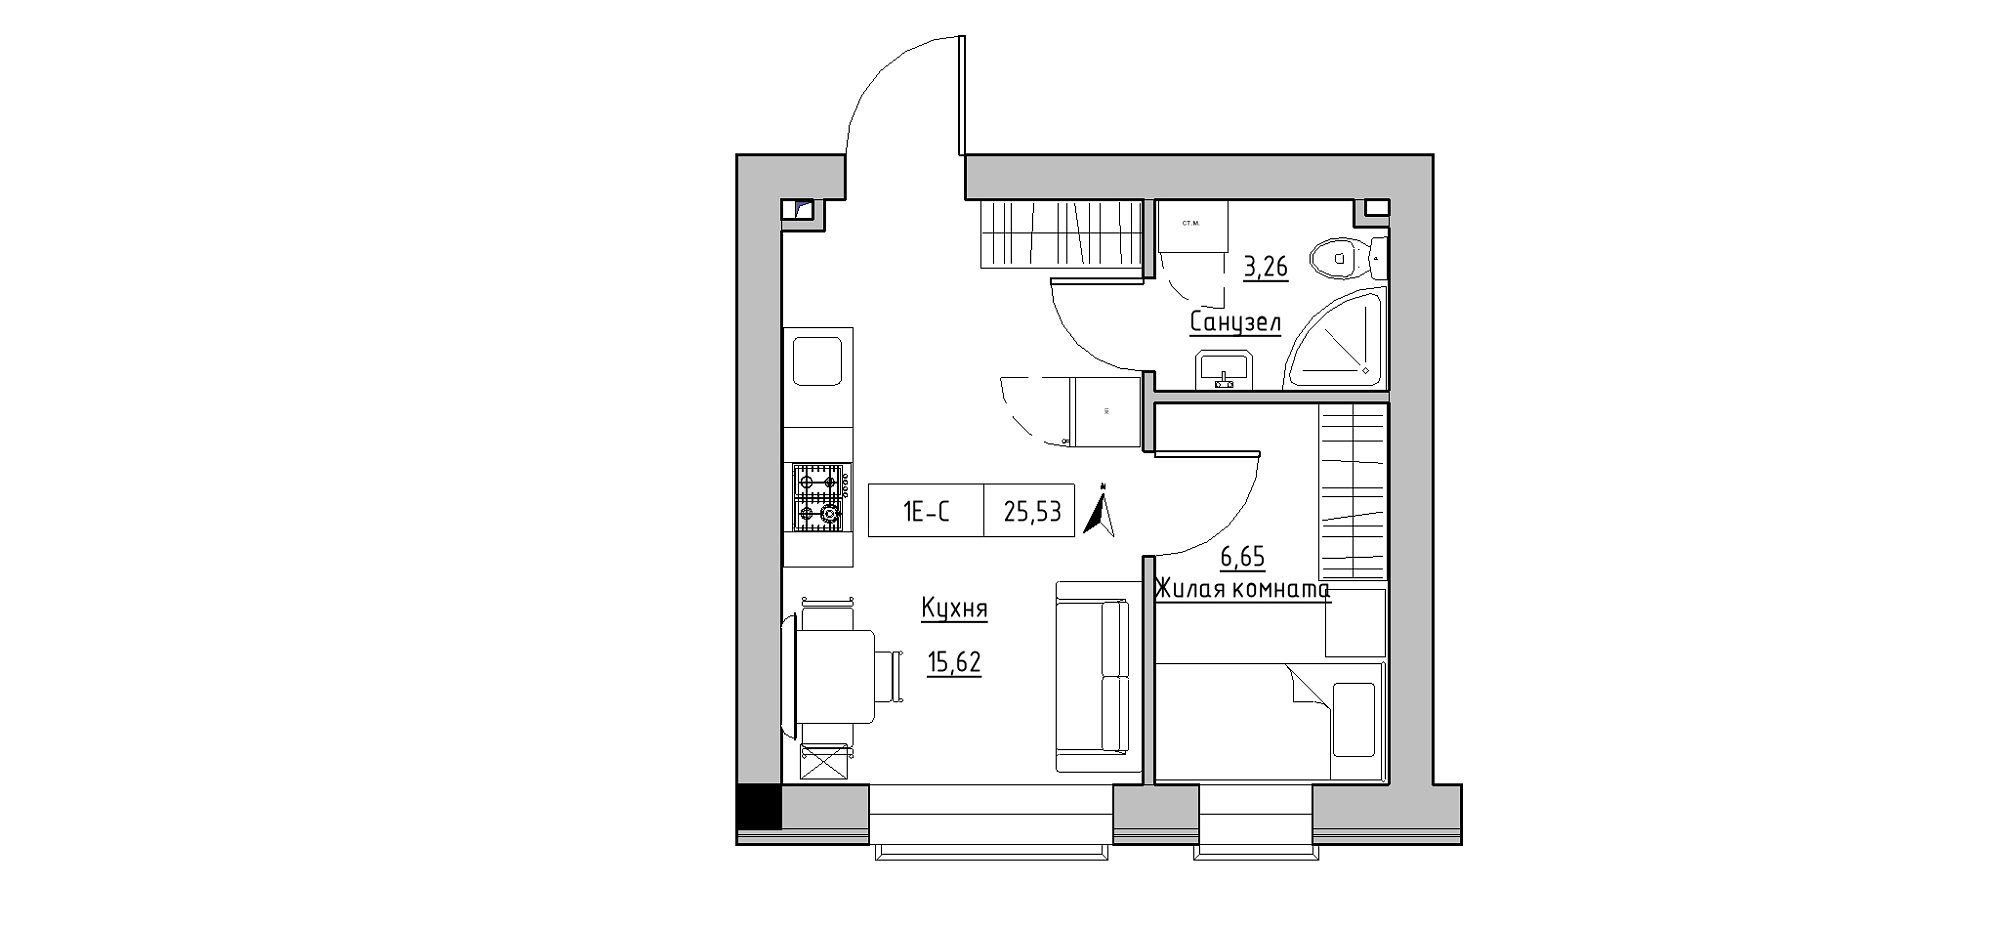 Планування 1-к квартира площею 25.53м2, KS-020-03/0004.